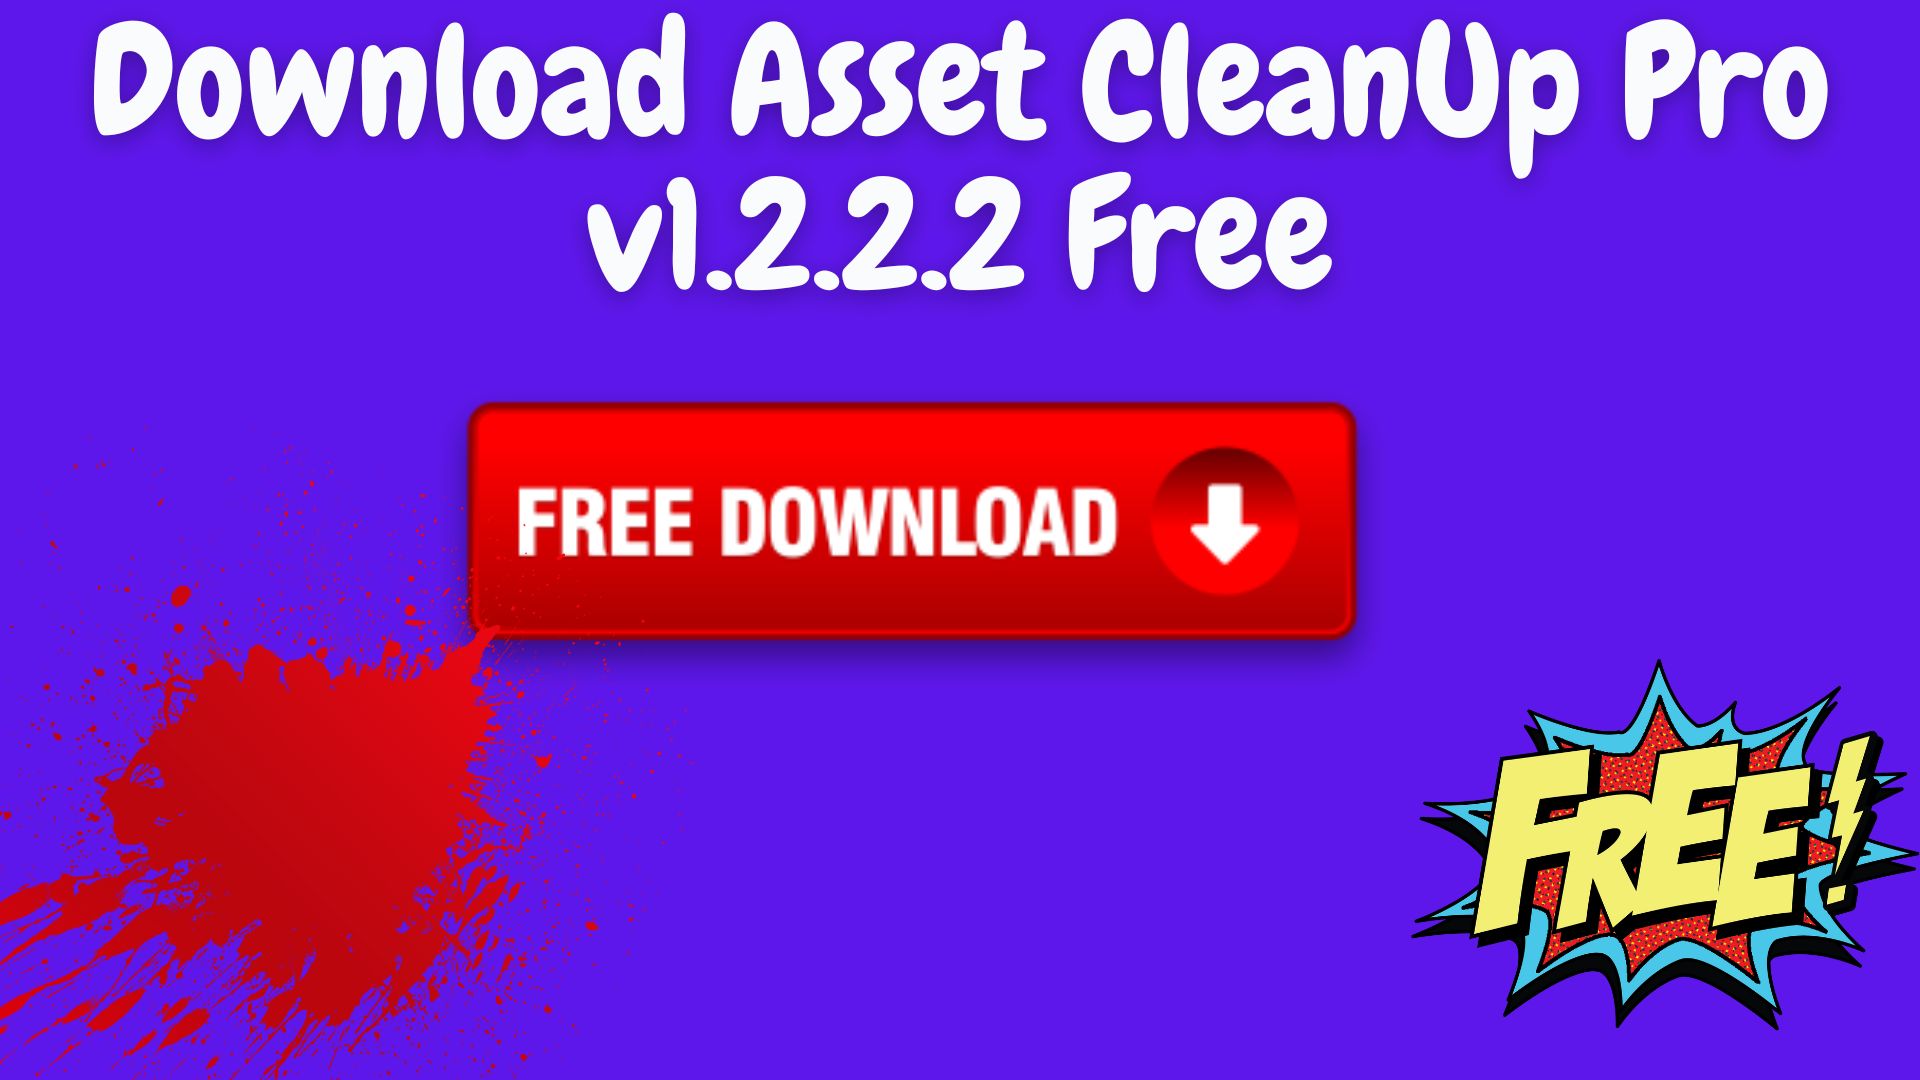 Download asset cleanup pro v1. 2. 2. 2 free